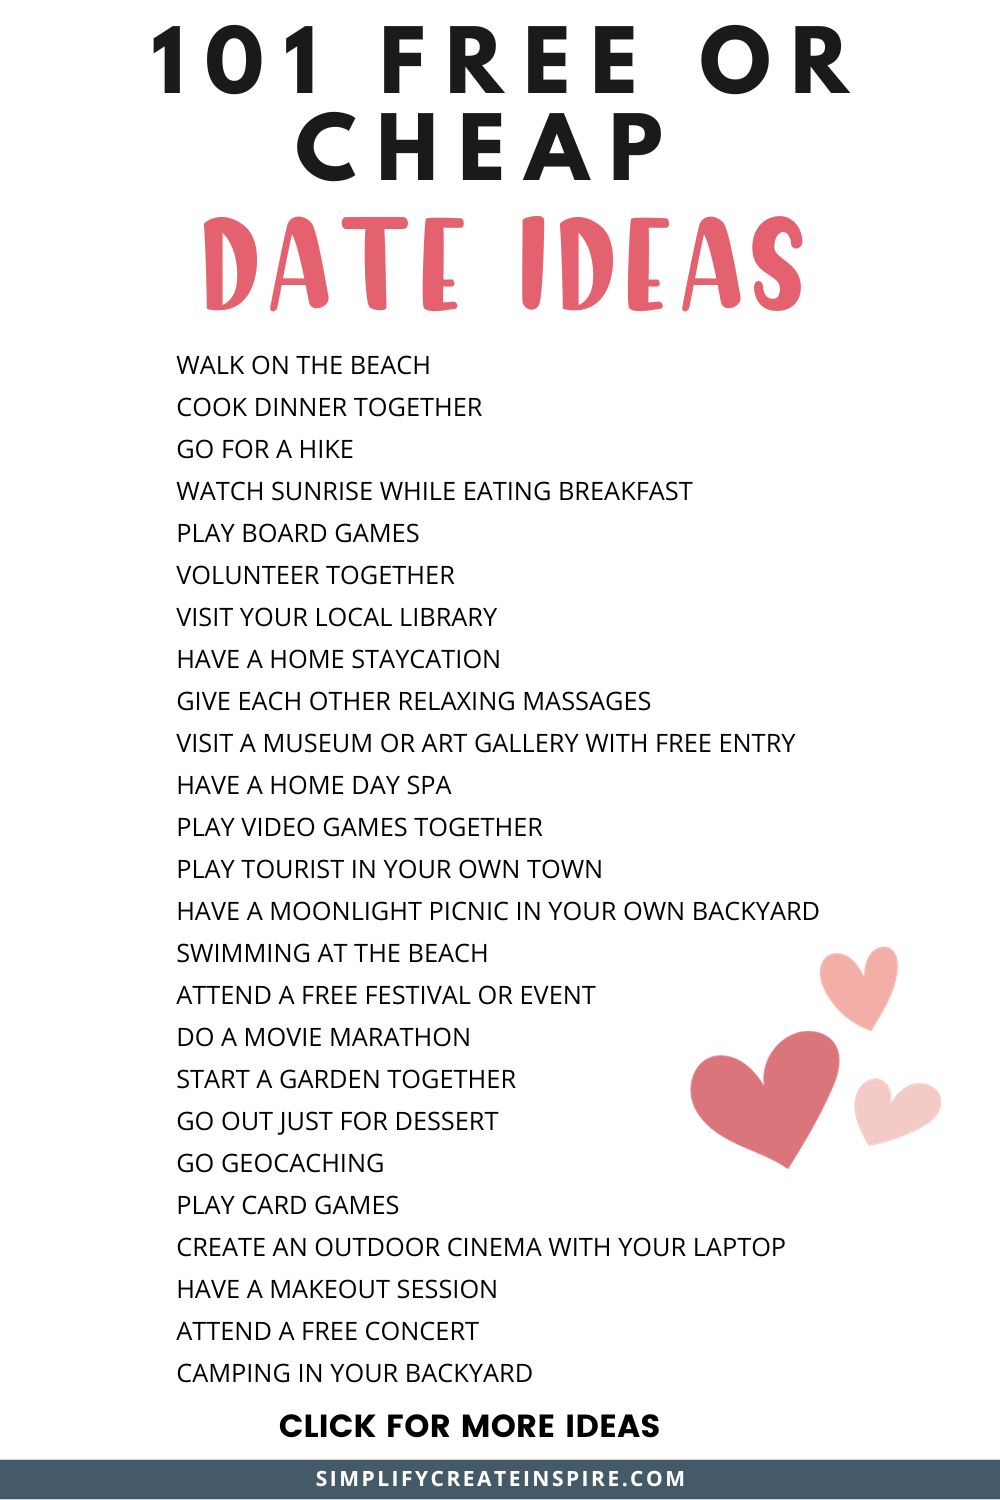 101 free or cheap date ideas list.